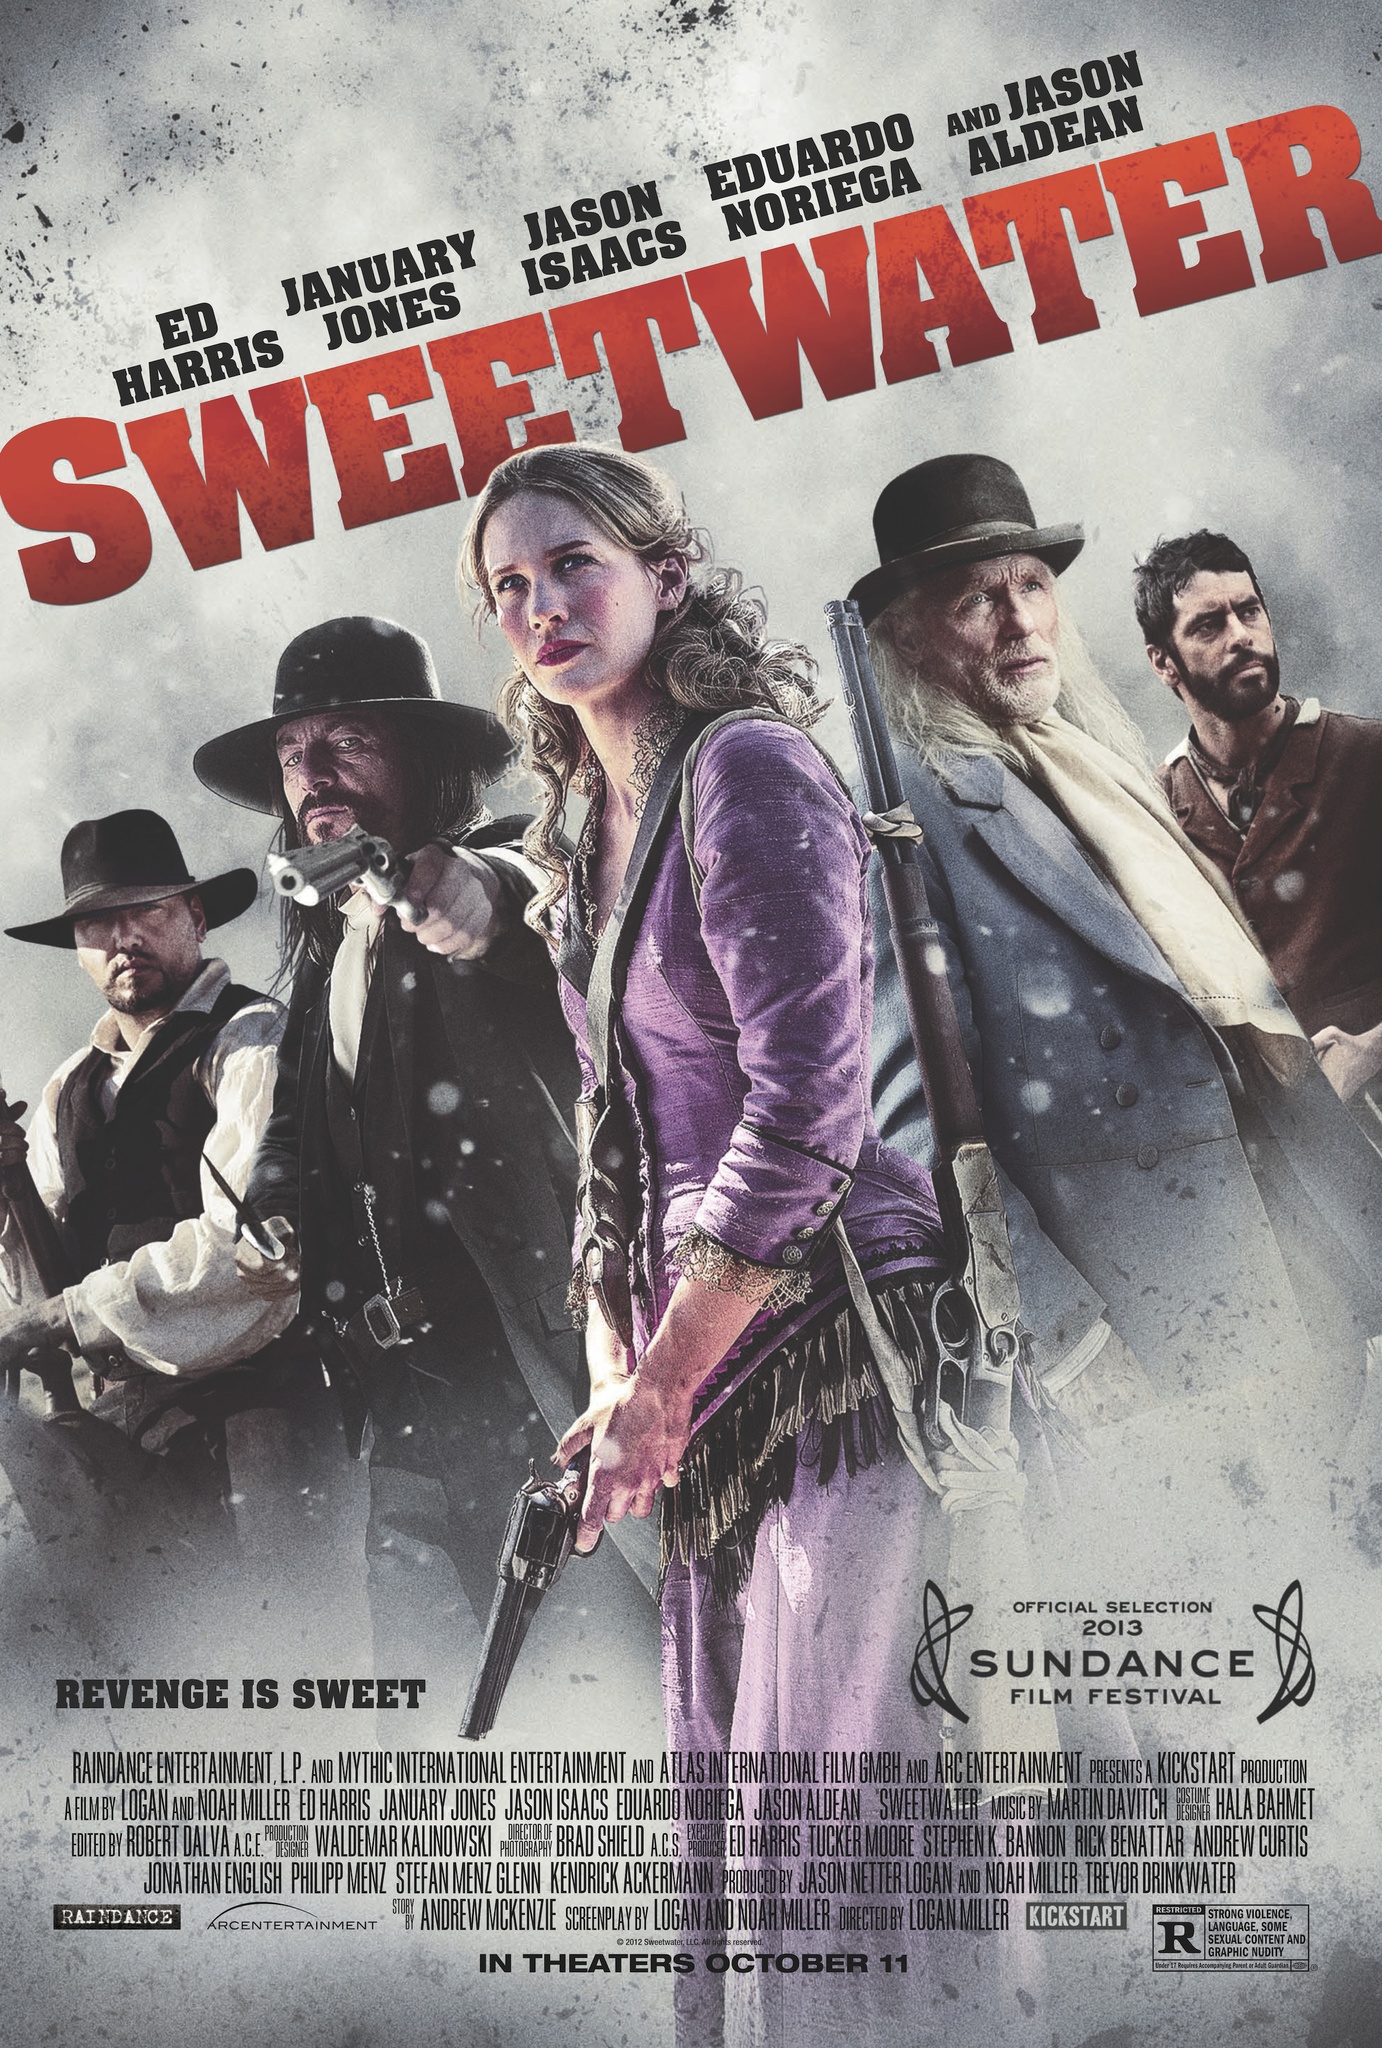 ดูหนังออนไลน์ Sweetwater (2013) ประวัติเธอเลือดบันทึก